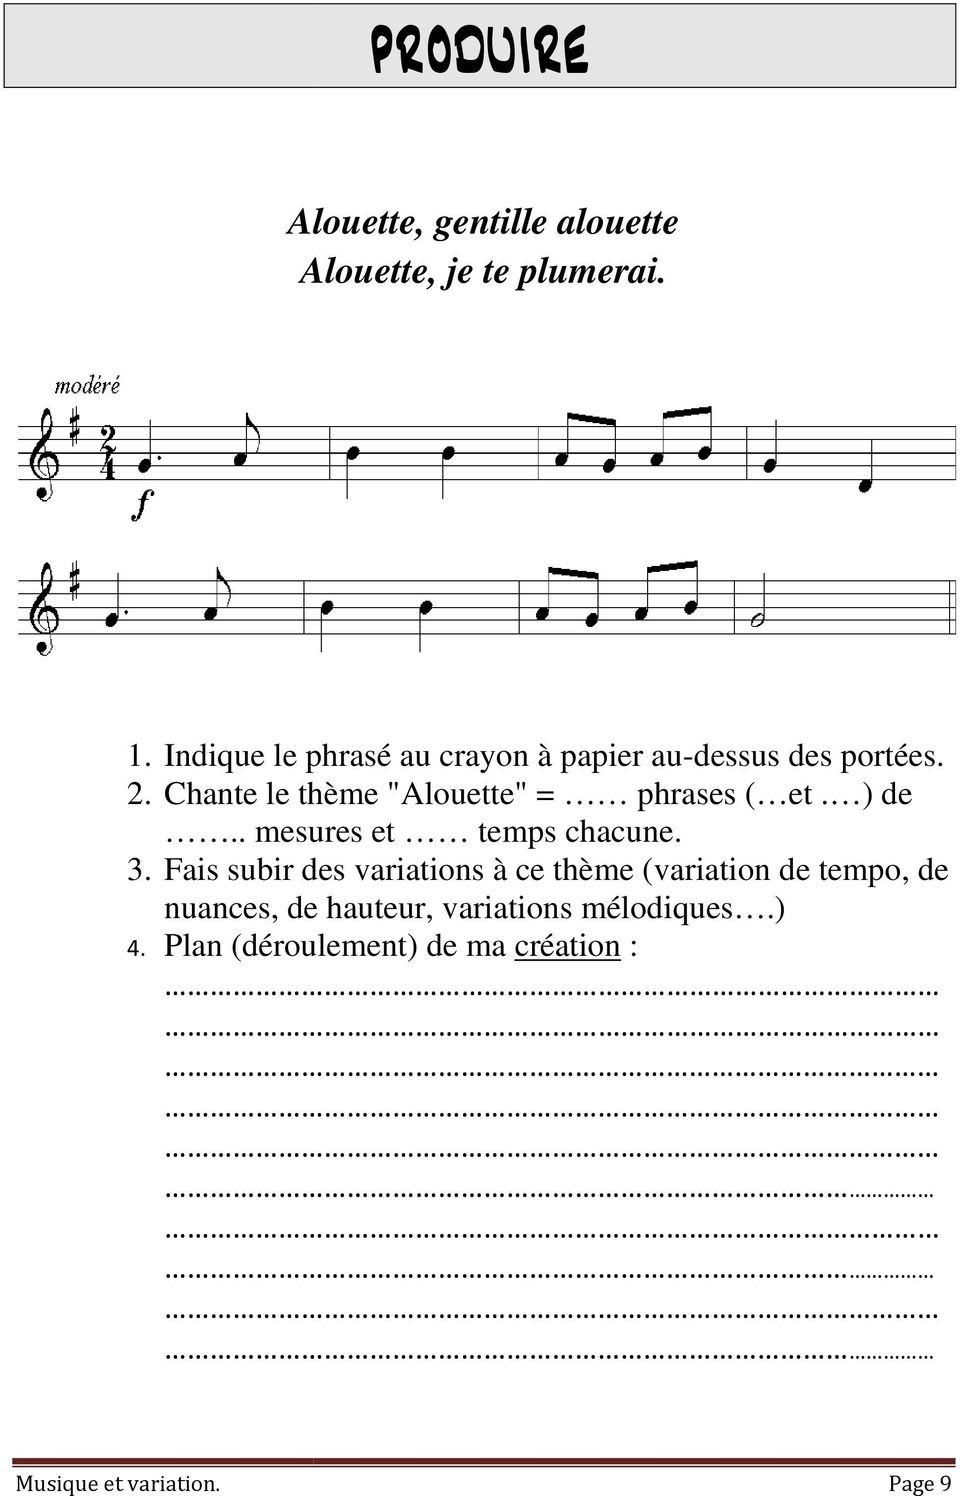 Chante le thème "Alouette" = phrases ( et. ) de.. mesures et temps chacune. 3.